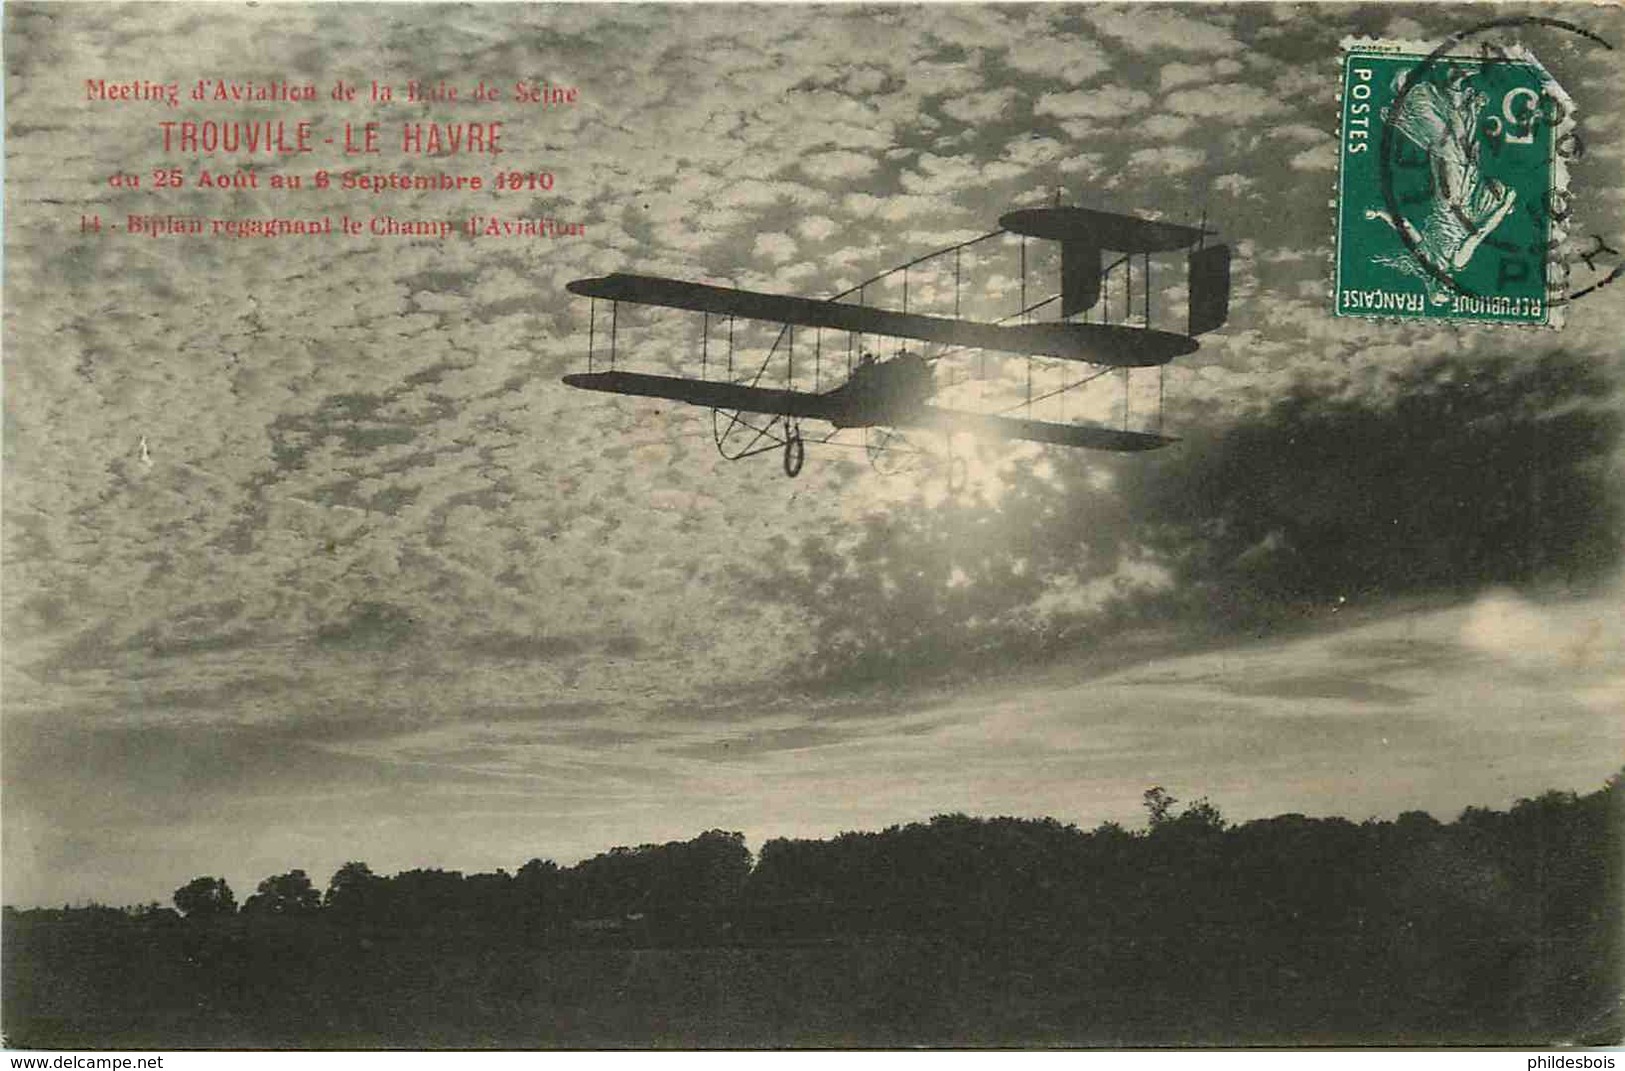 MEETING AVIATION DE LA BAIE DE SEINE  TROUVILE  LE HAVRE  Biplant Regagnant Le Champ D'aviation - 1914-1918: 1ra Guerra